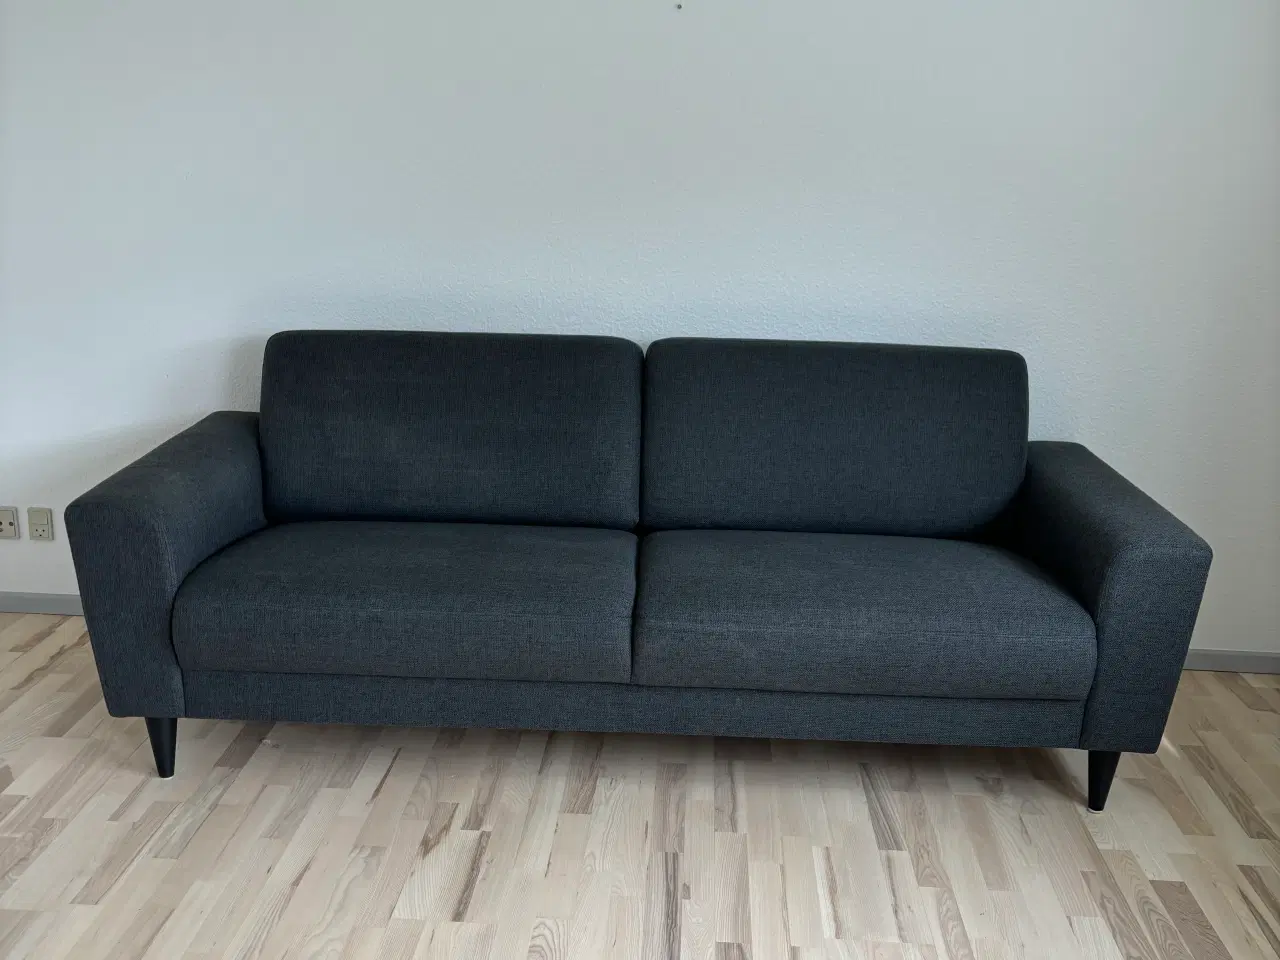 Billede 3 - 1 år gammel sofa sælges. Befinder sig i Gråsten 